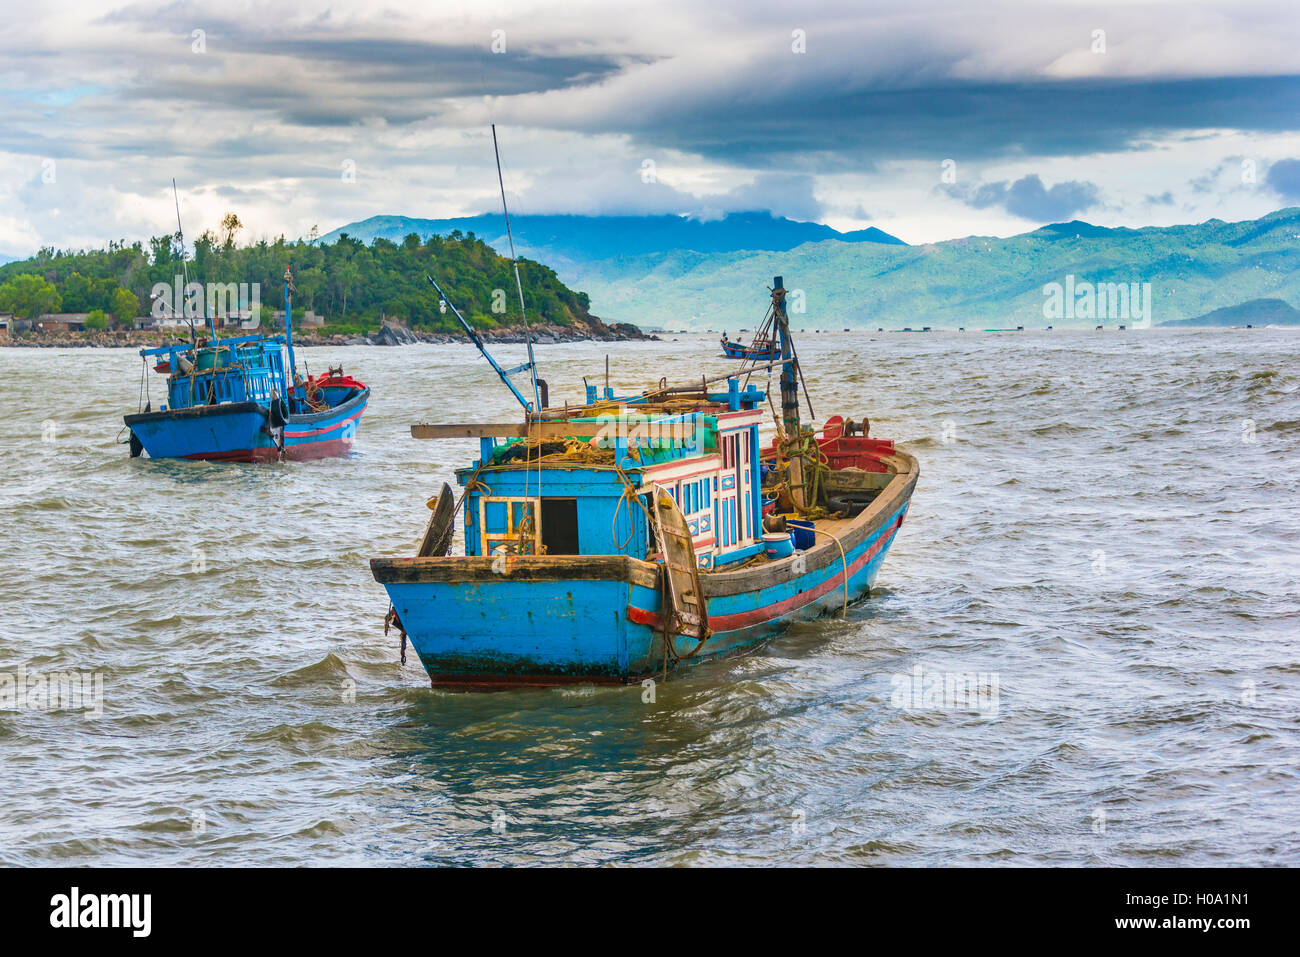 Blue fishing boats, fishing boats on the water, Nha Trang, Khánh Hòa Province, Vietnam Stock Photo